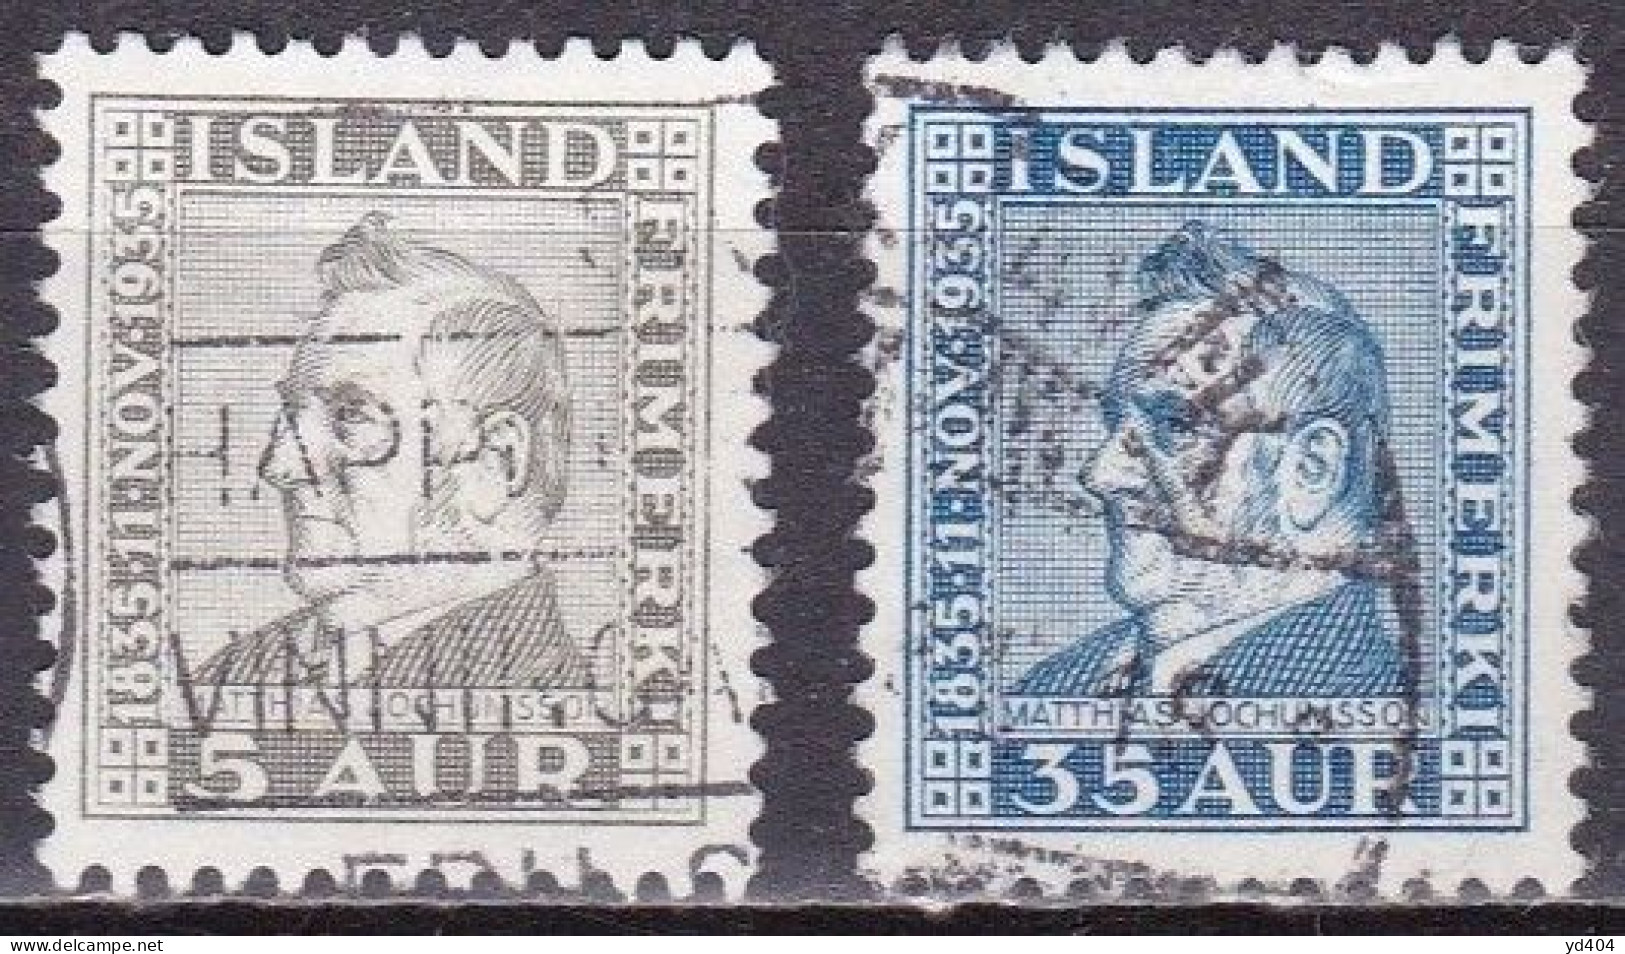 IS031B – ISLANDE – ICELAND – 1935 – MATHIAS JOCHUMSSON – SG # 217-219 USED - Usados